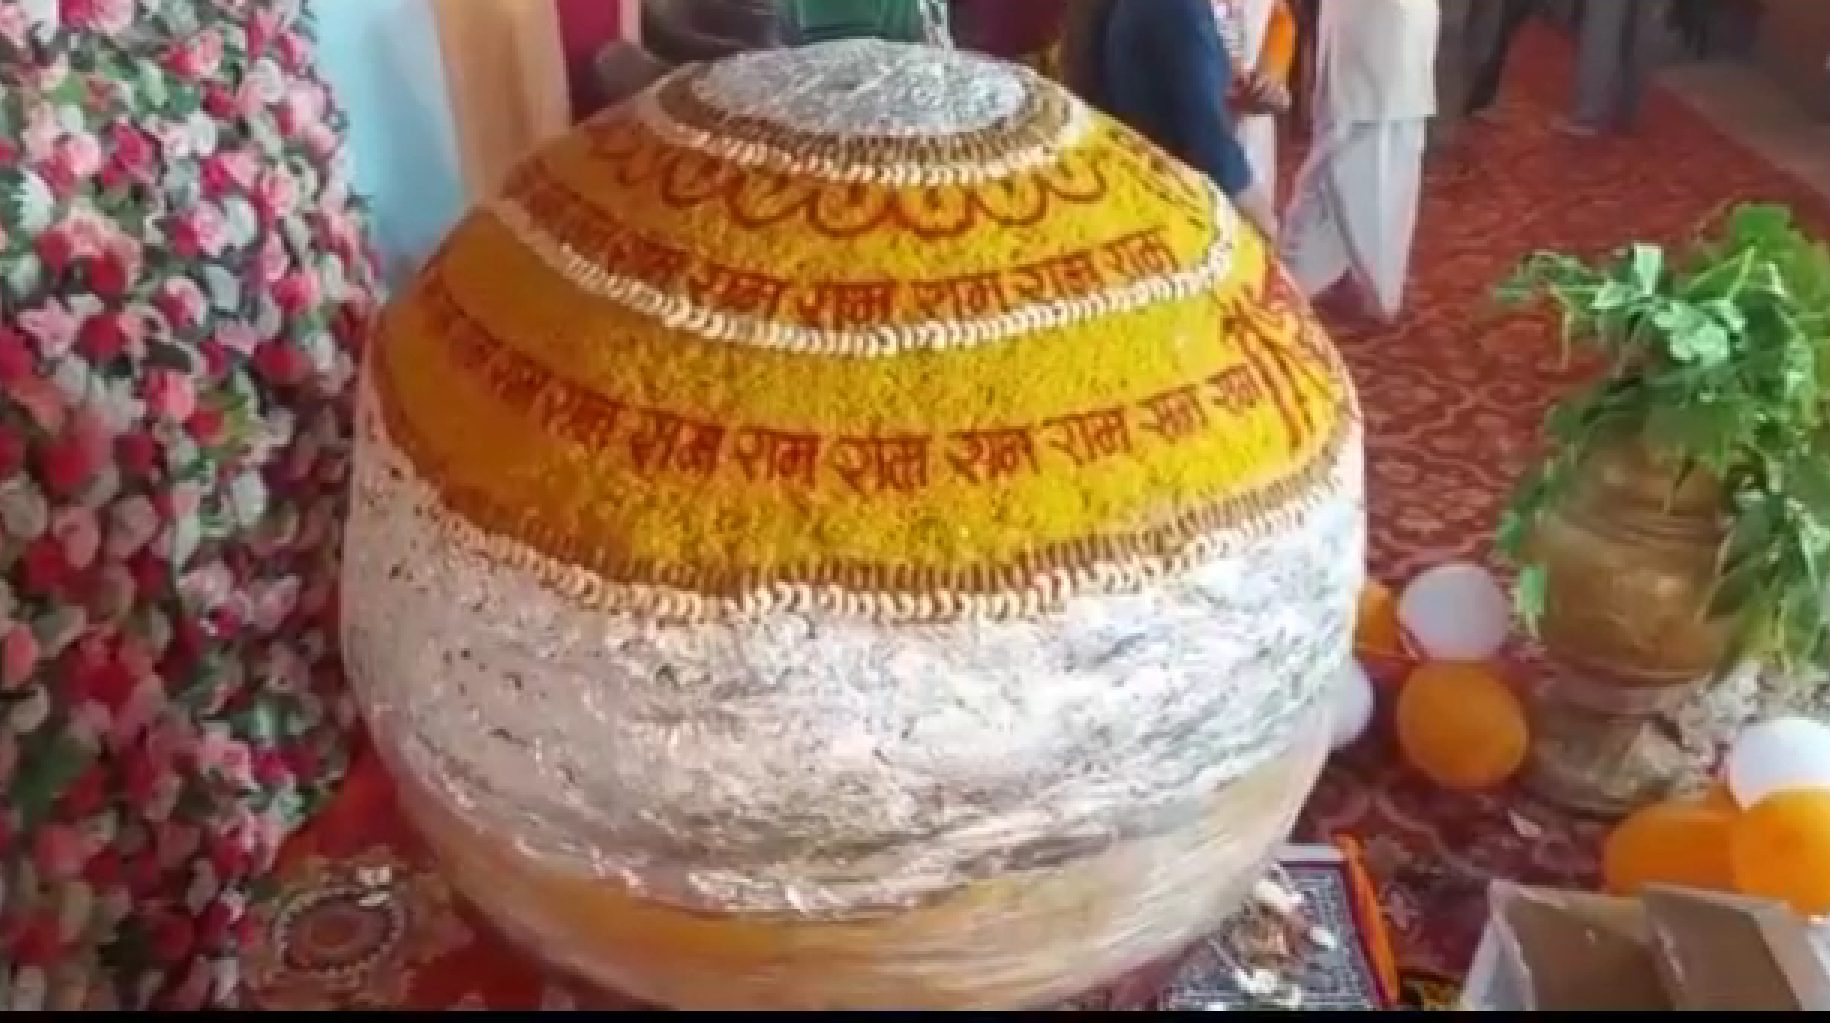 Hanuman Jayanti 2023: जबलपुर में बजरंगबली को लगाया गया 1 टन वजनी महालड्डू का भोग, 12 कारीगरों ने किया तैयार